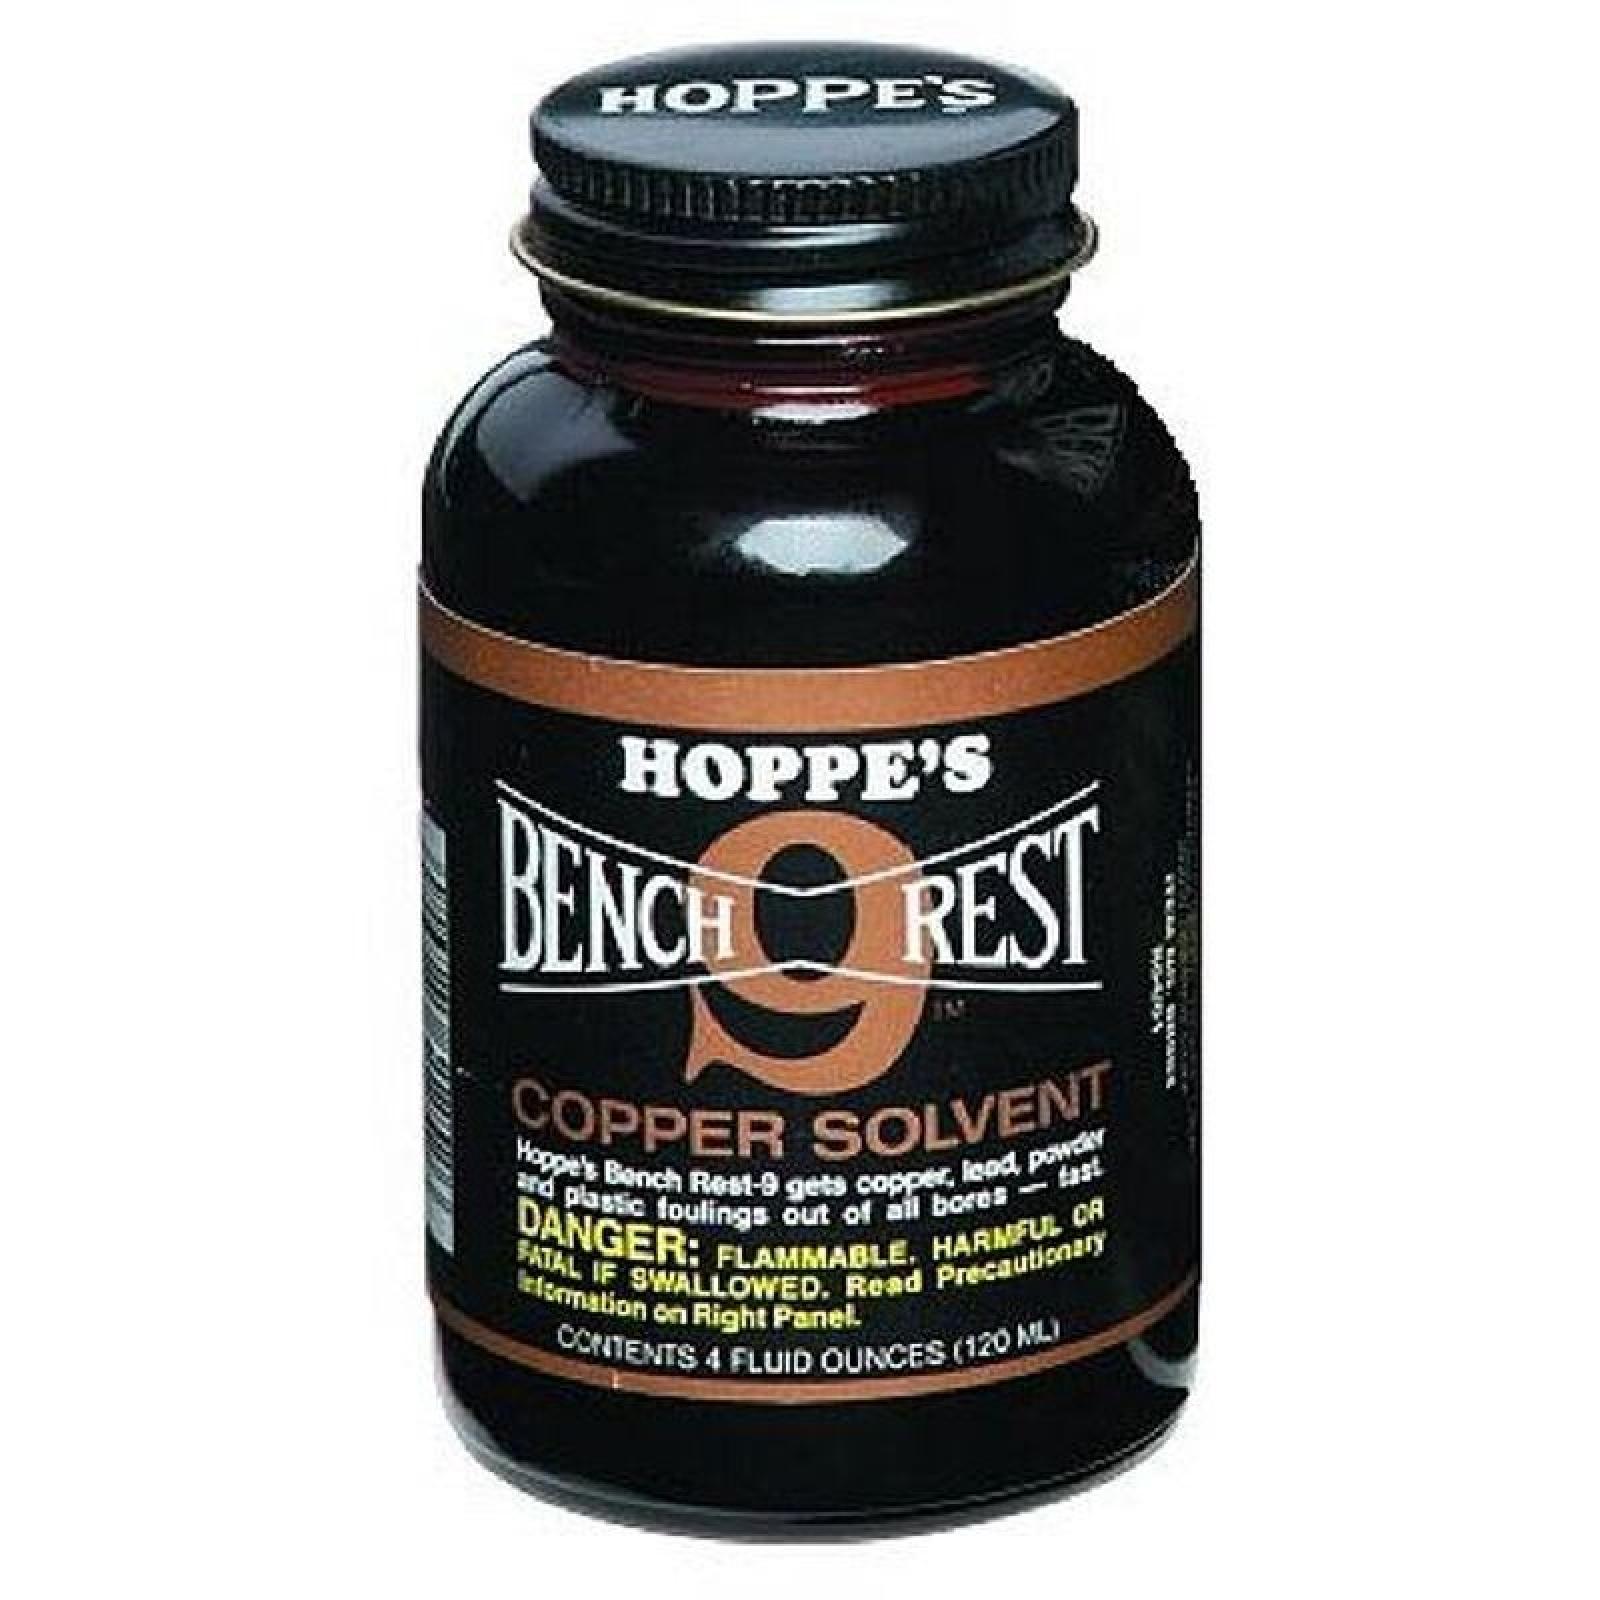 Blackhawk Hoppe's Bench Rest No. 9 Liquid Copper Solvent 4 oz. Glass Bottle